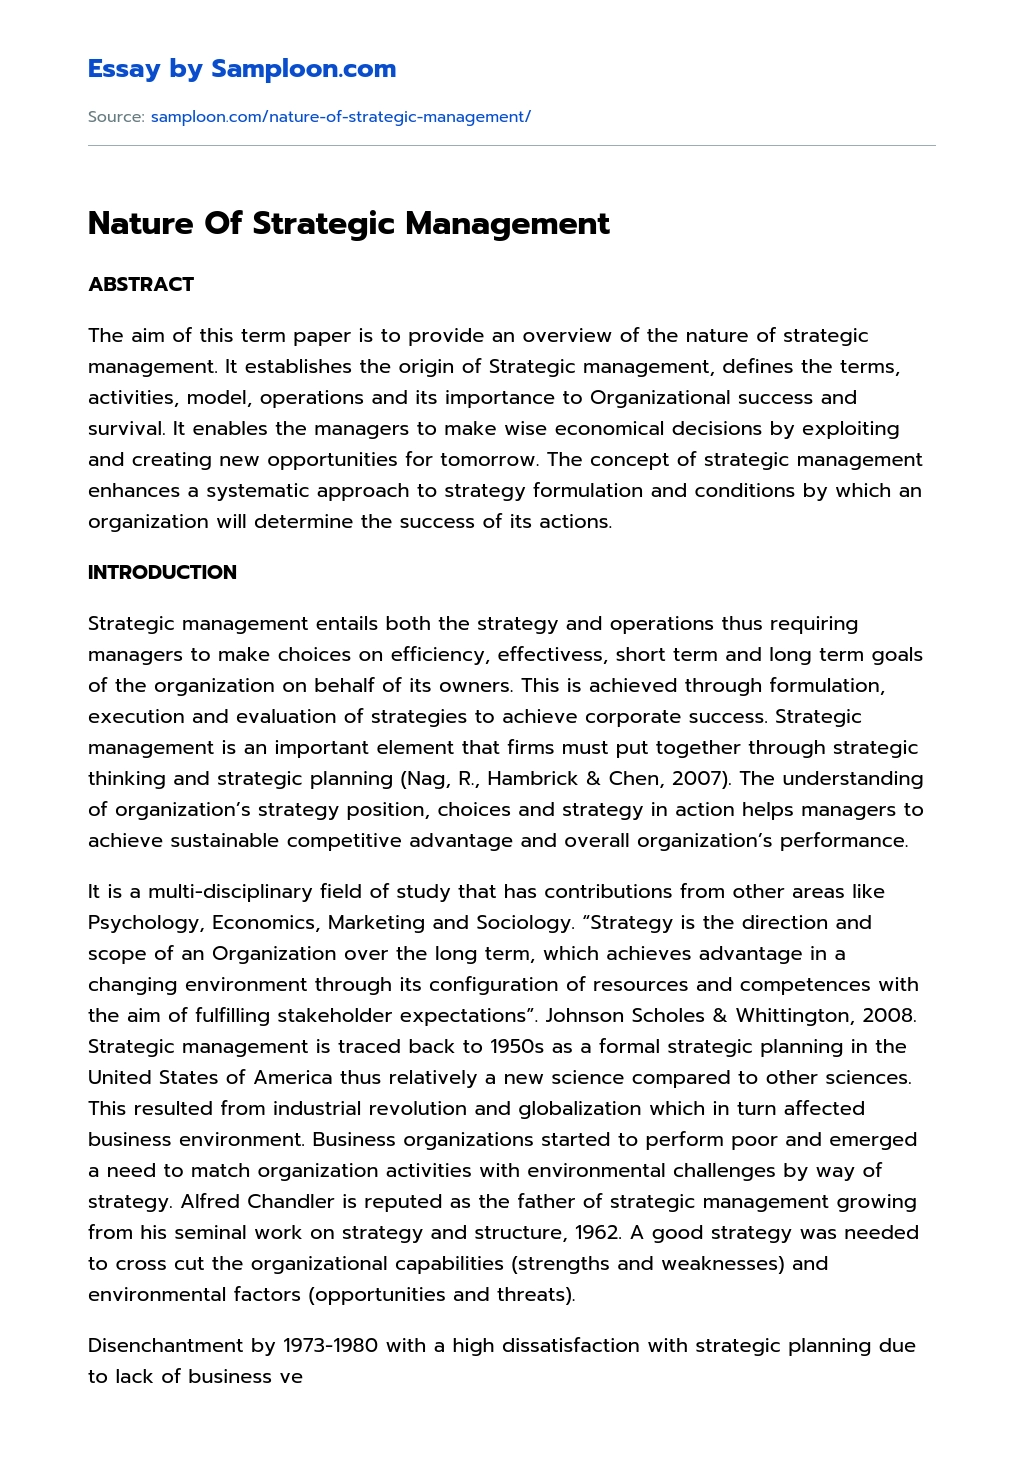 Nature Of Strategic Management essay